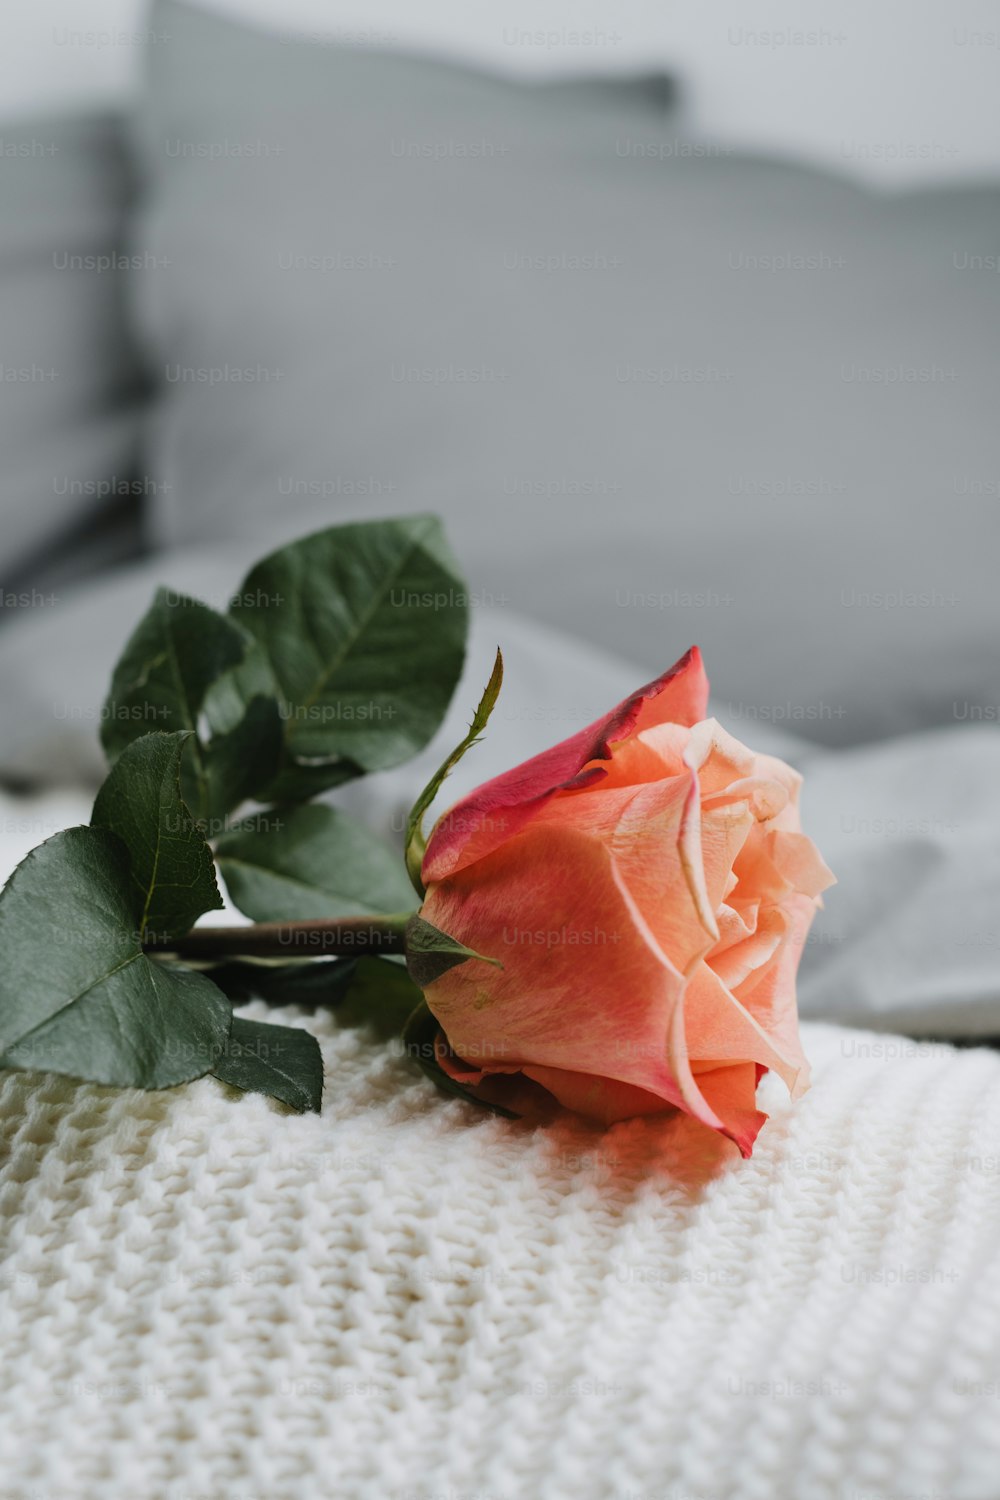 uma única rosa sentada em cima de um cobertor branco